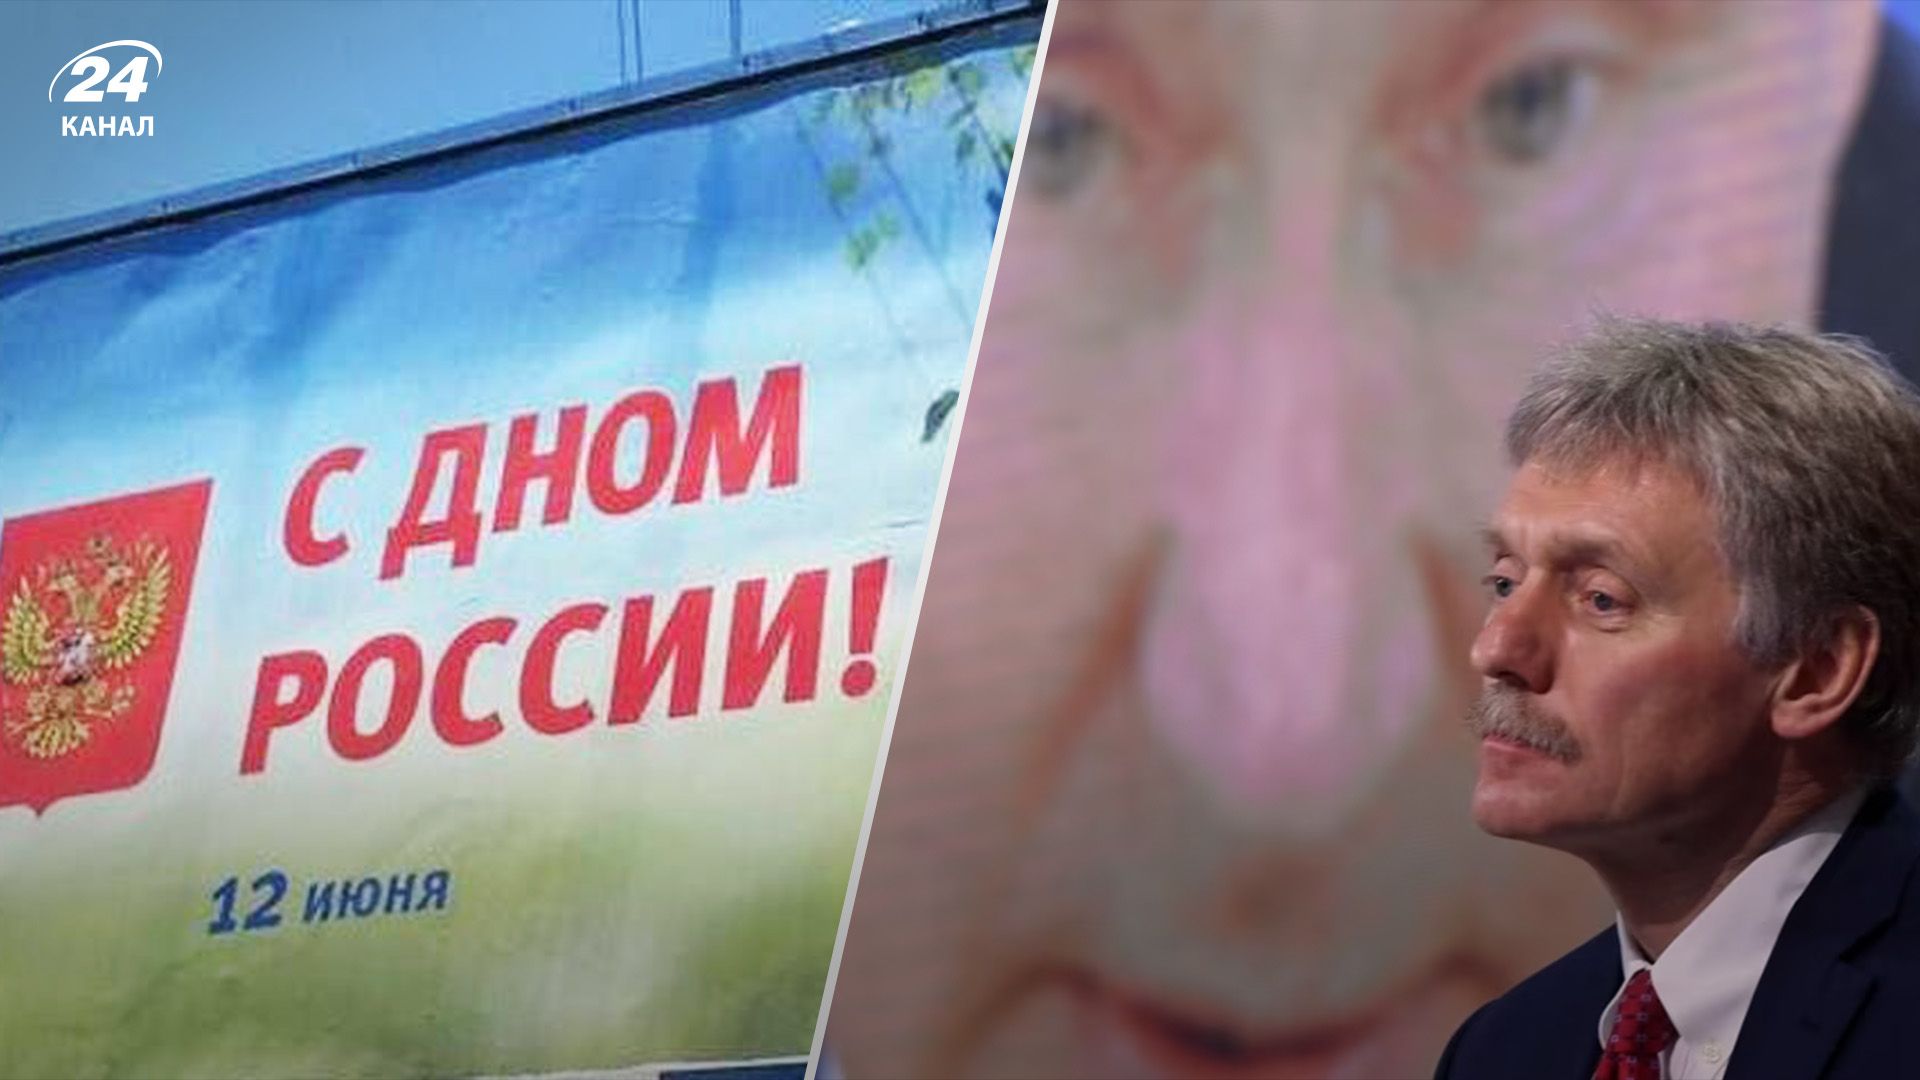 А що трапилось: у Кремлі передумали проводити масштабне свято на день Росії - 24 Канал